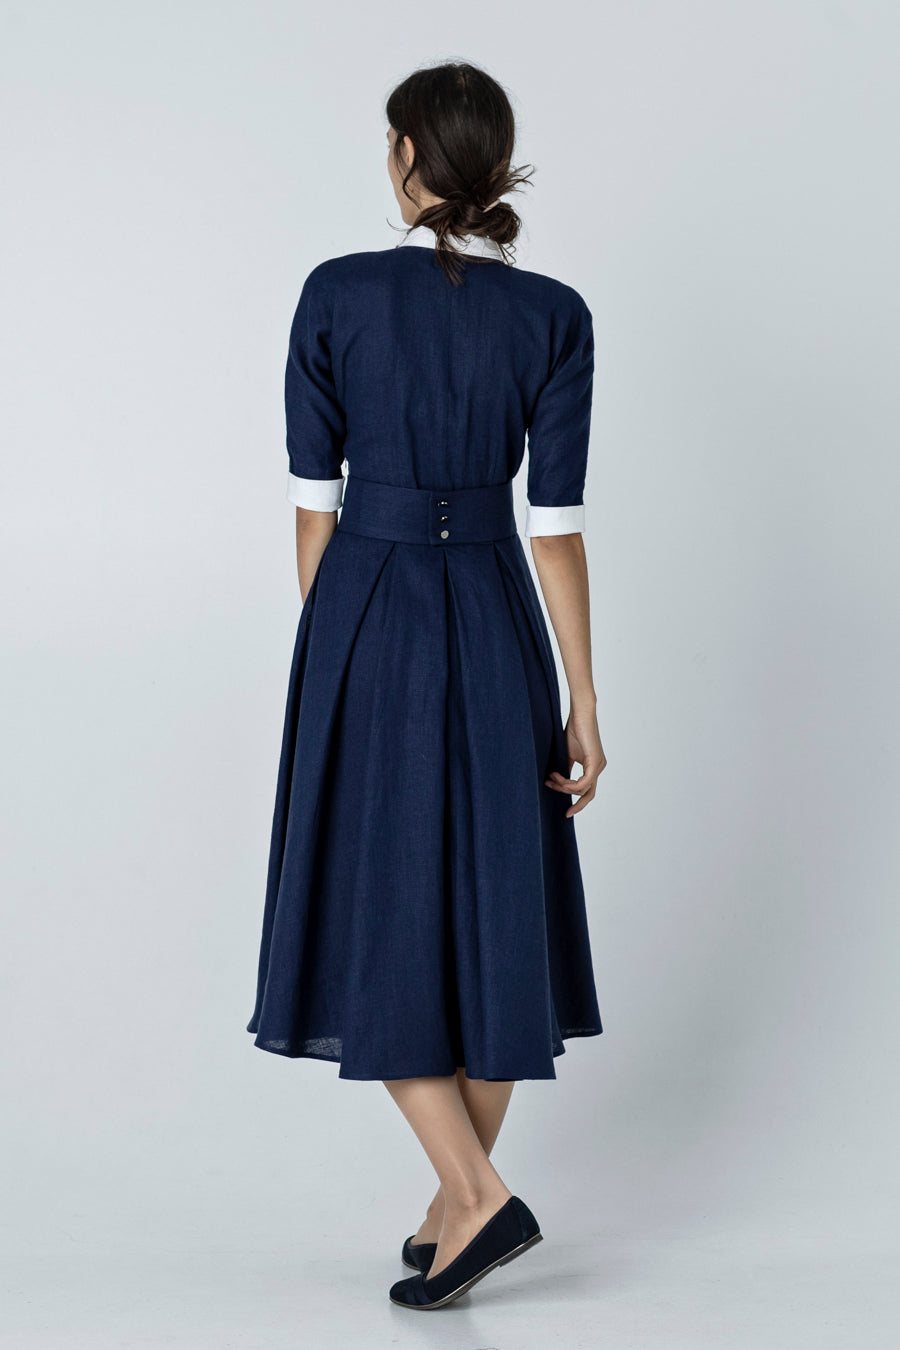 DIANA | 1950s swing dress, peter pan collar dress